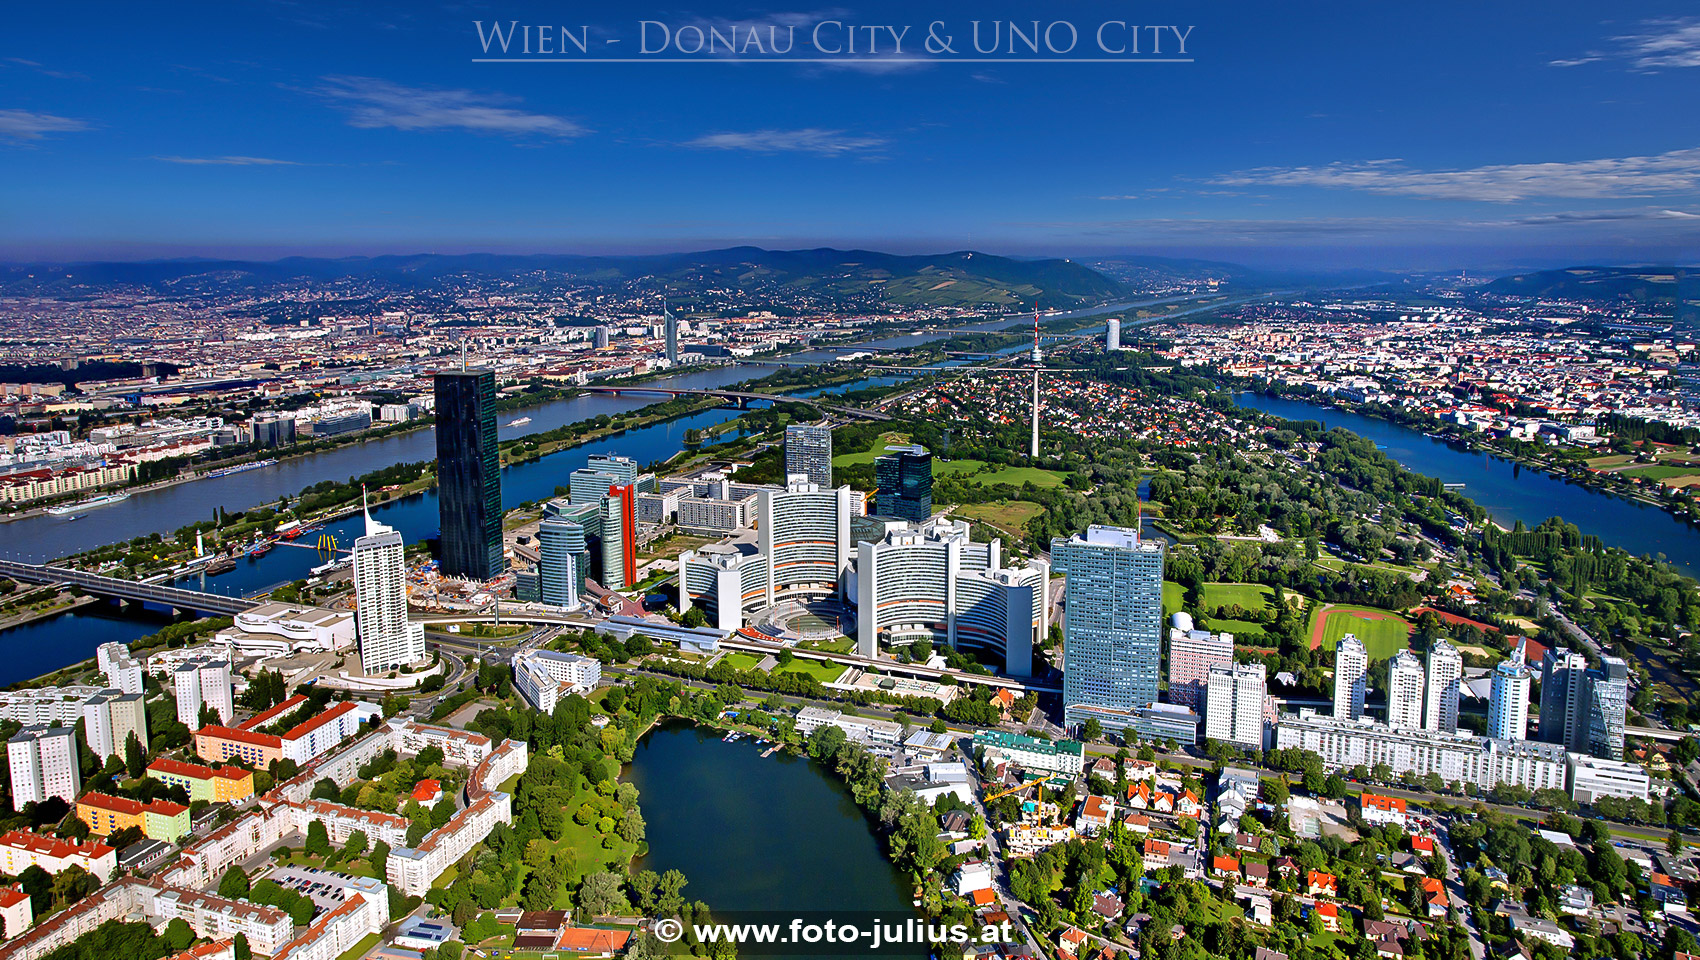 W5897a_Donau_City_UNO_Kaiserwasser.jpg, 895kB